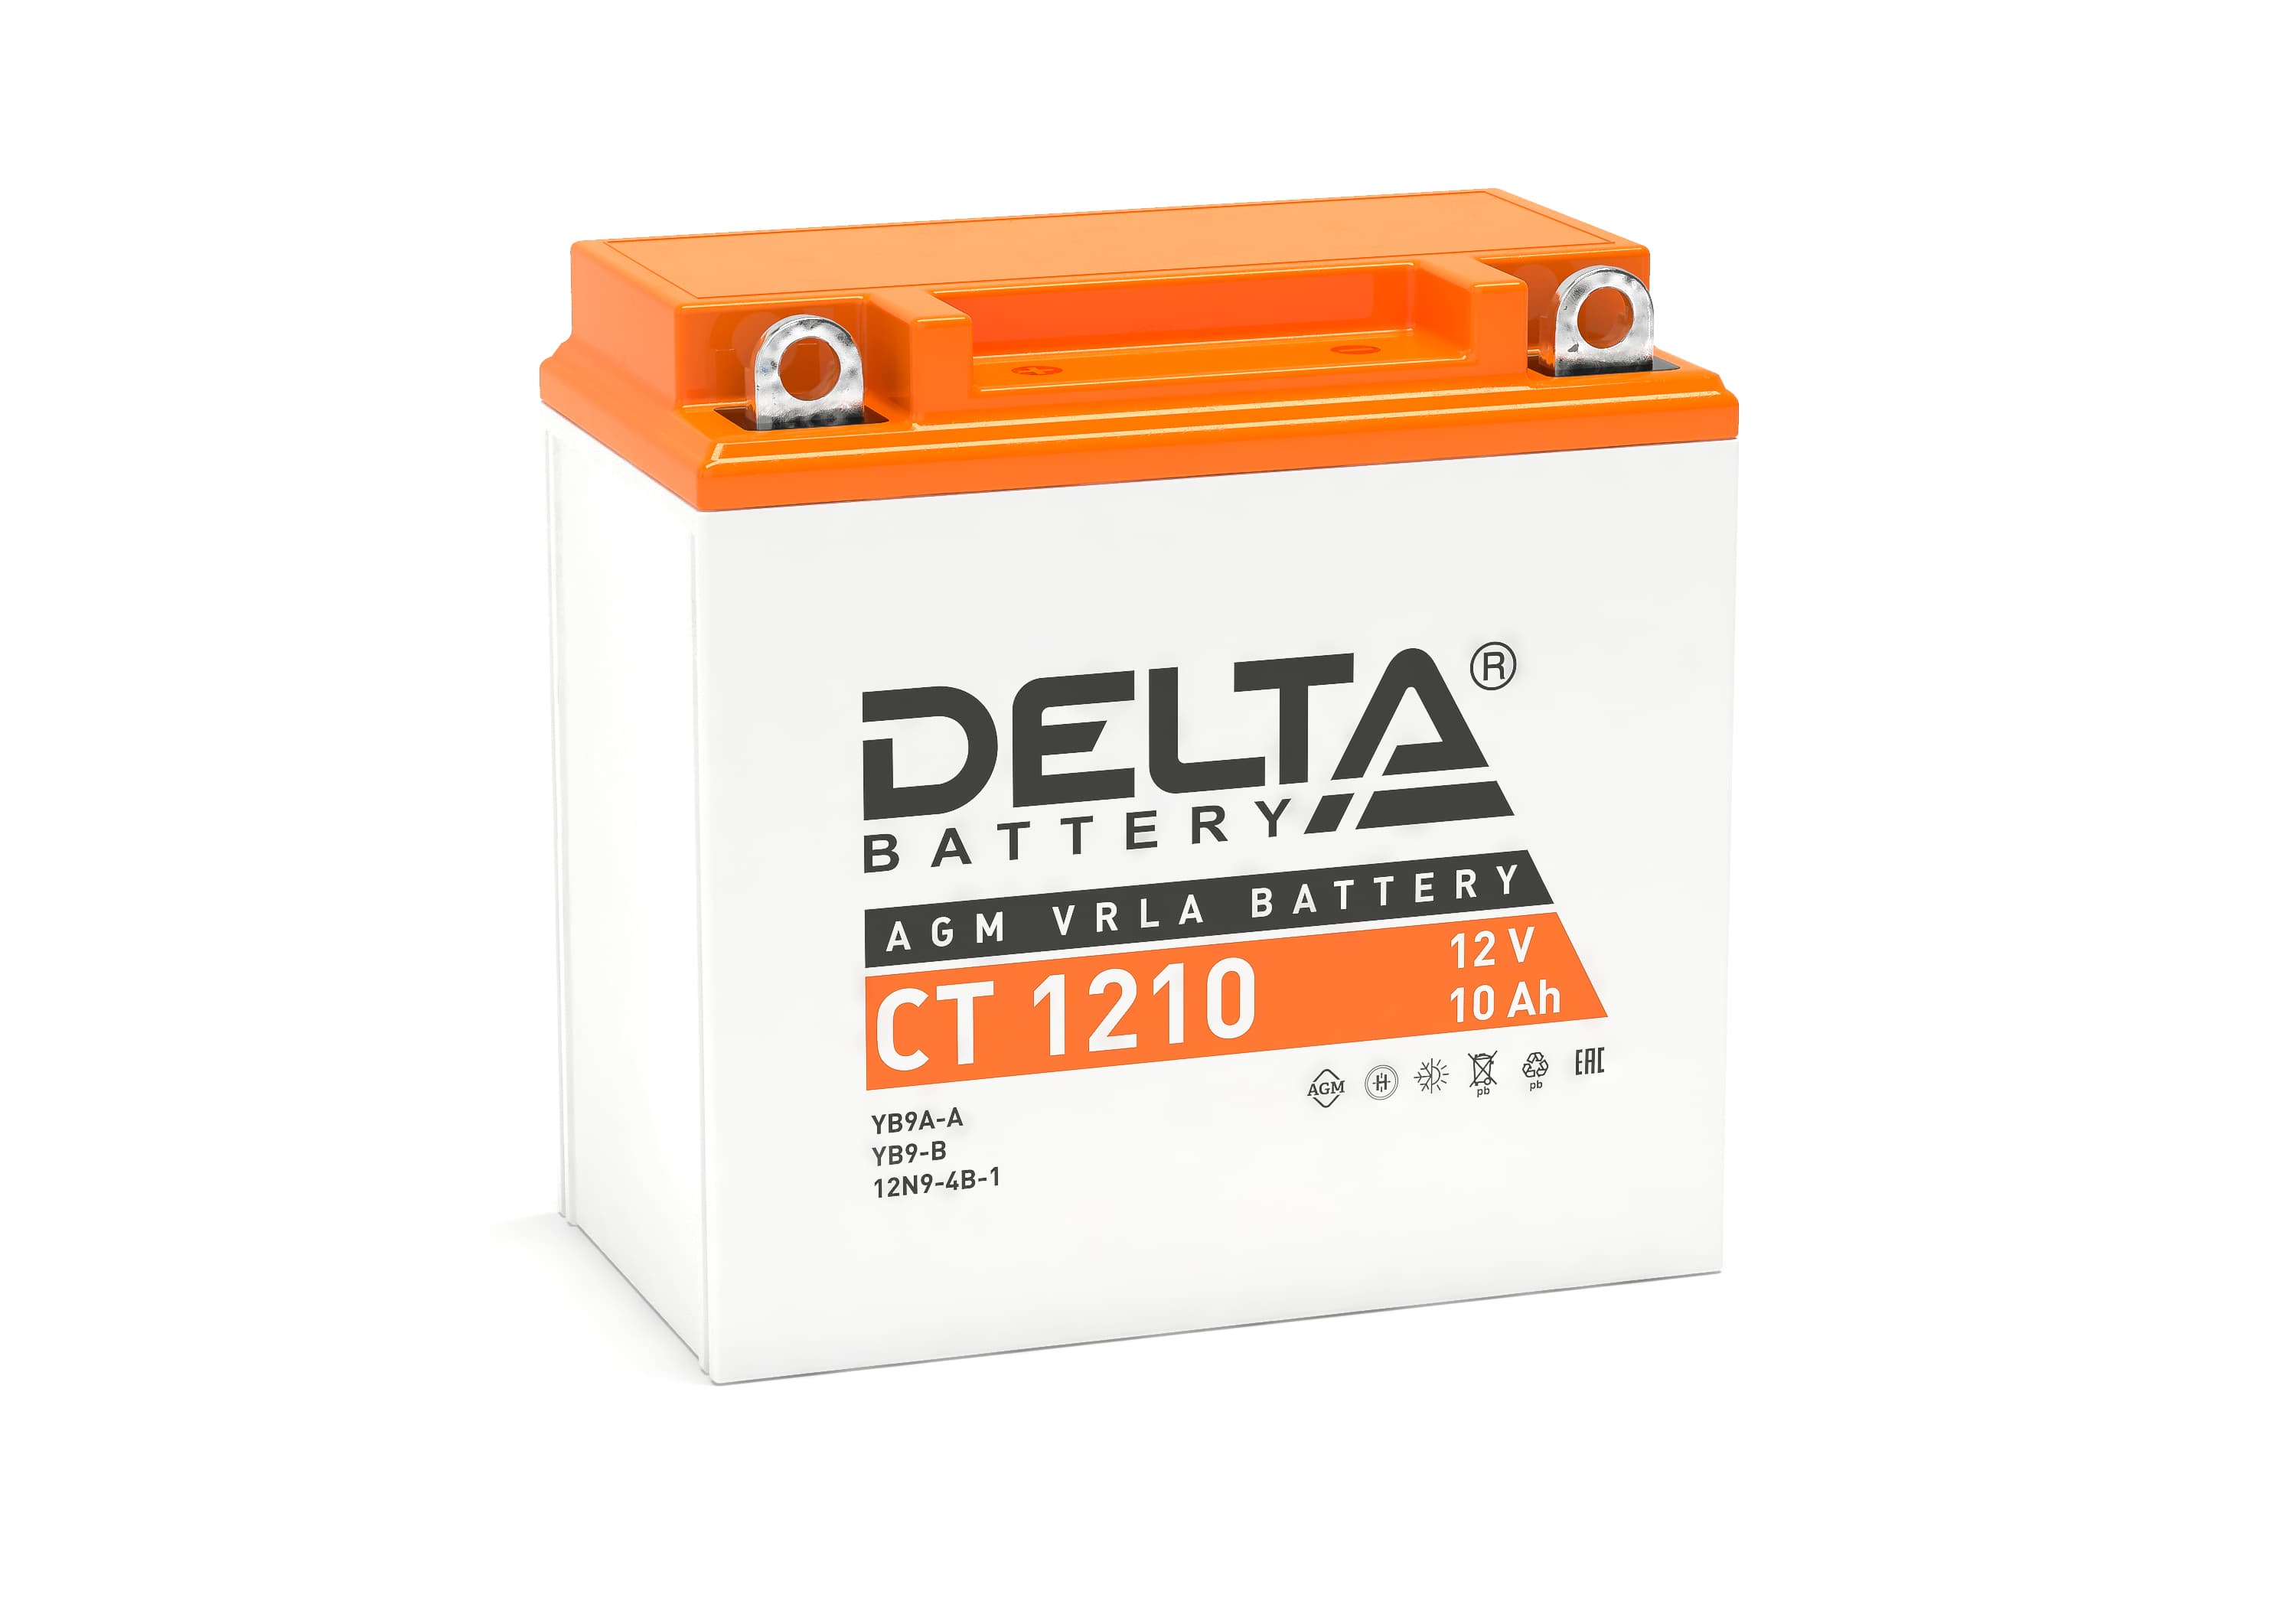 DELTA CT-1210 Аккумуляторная батарея AGM (+ -)12V 10Ah 100A 137х77x138 motoYB9A-A, YB9-B, 12N9-4B-1